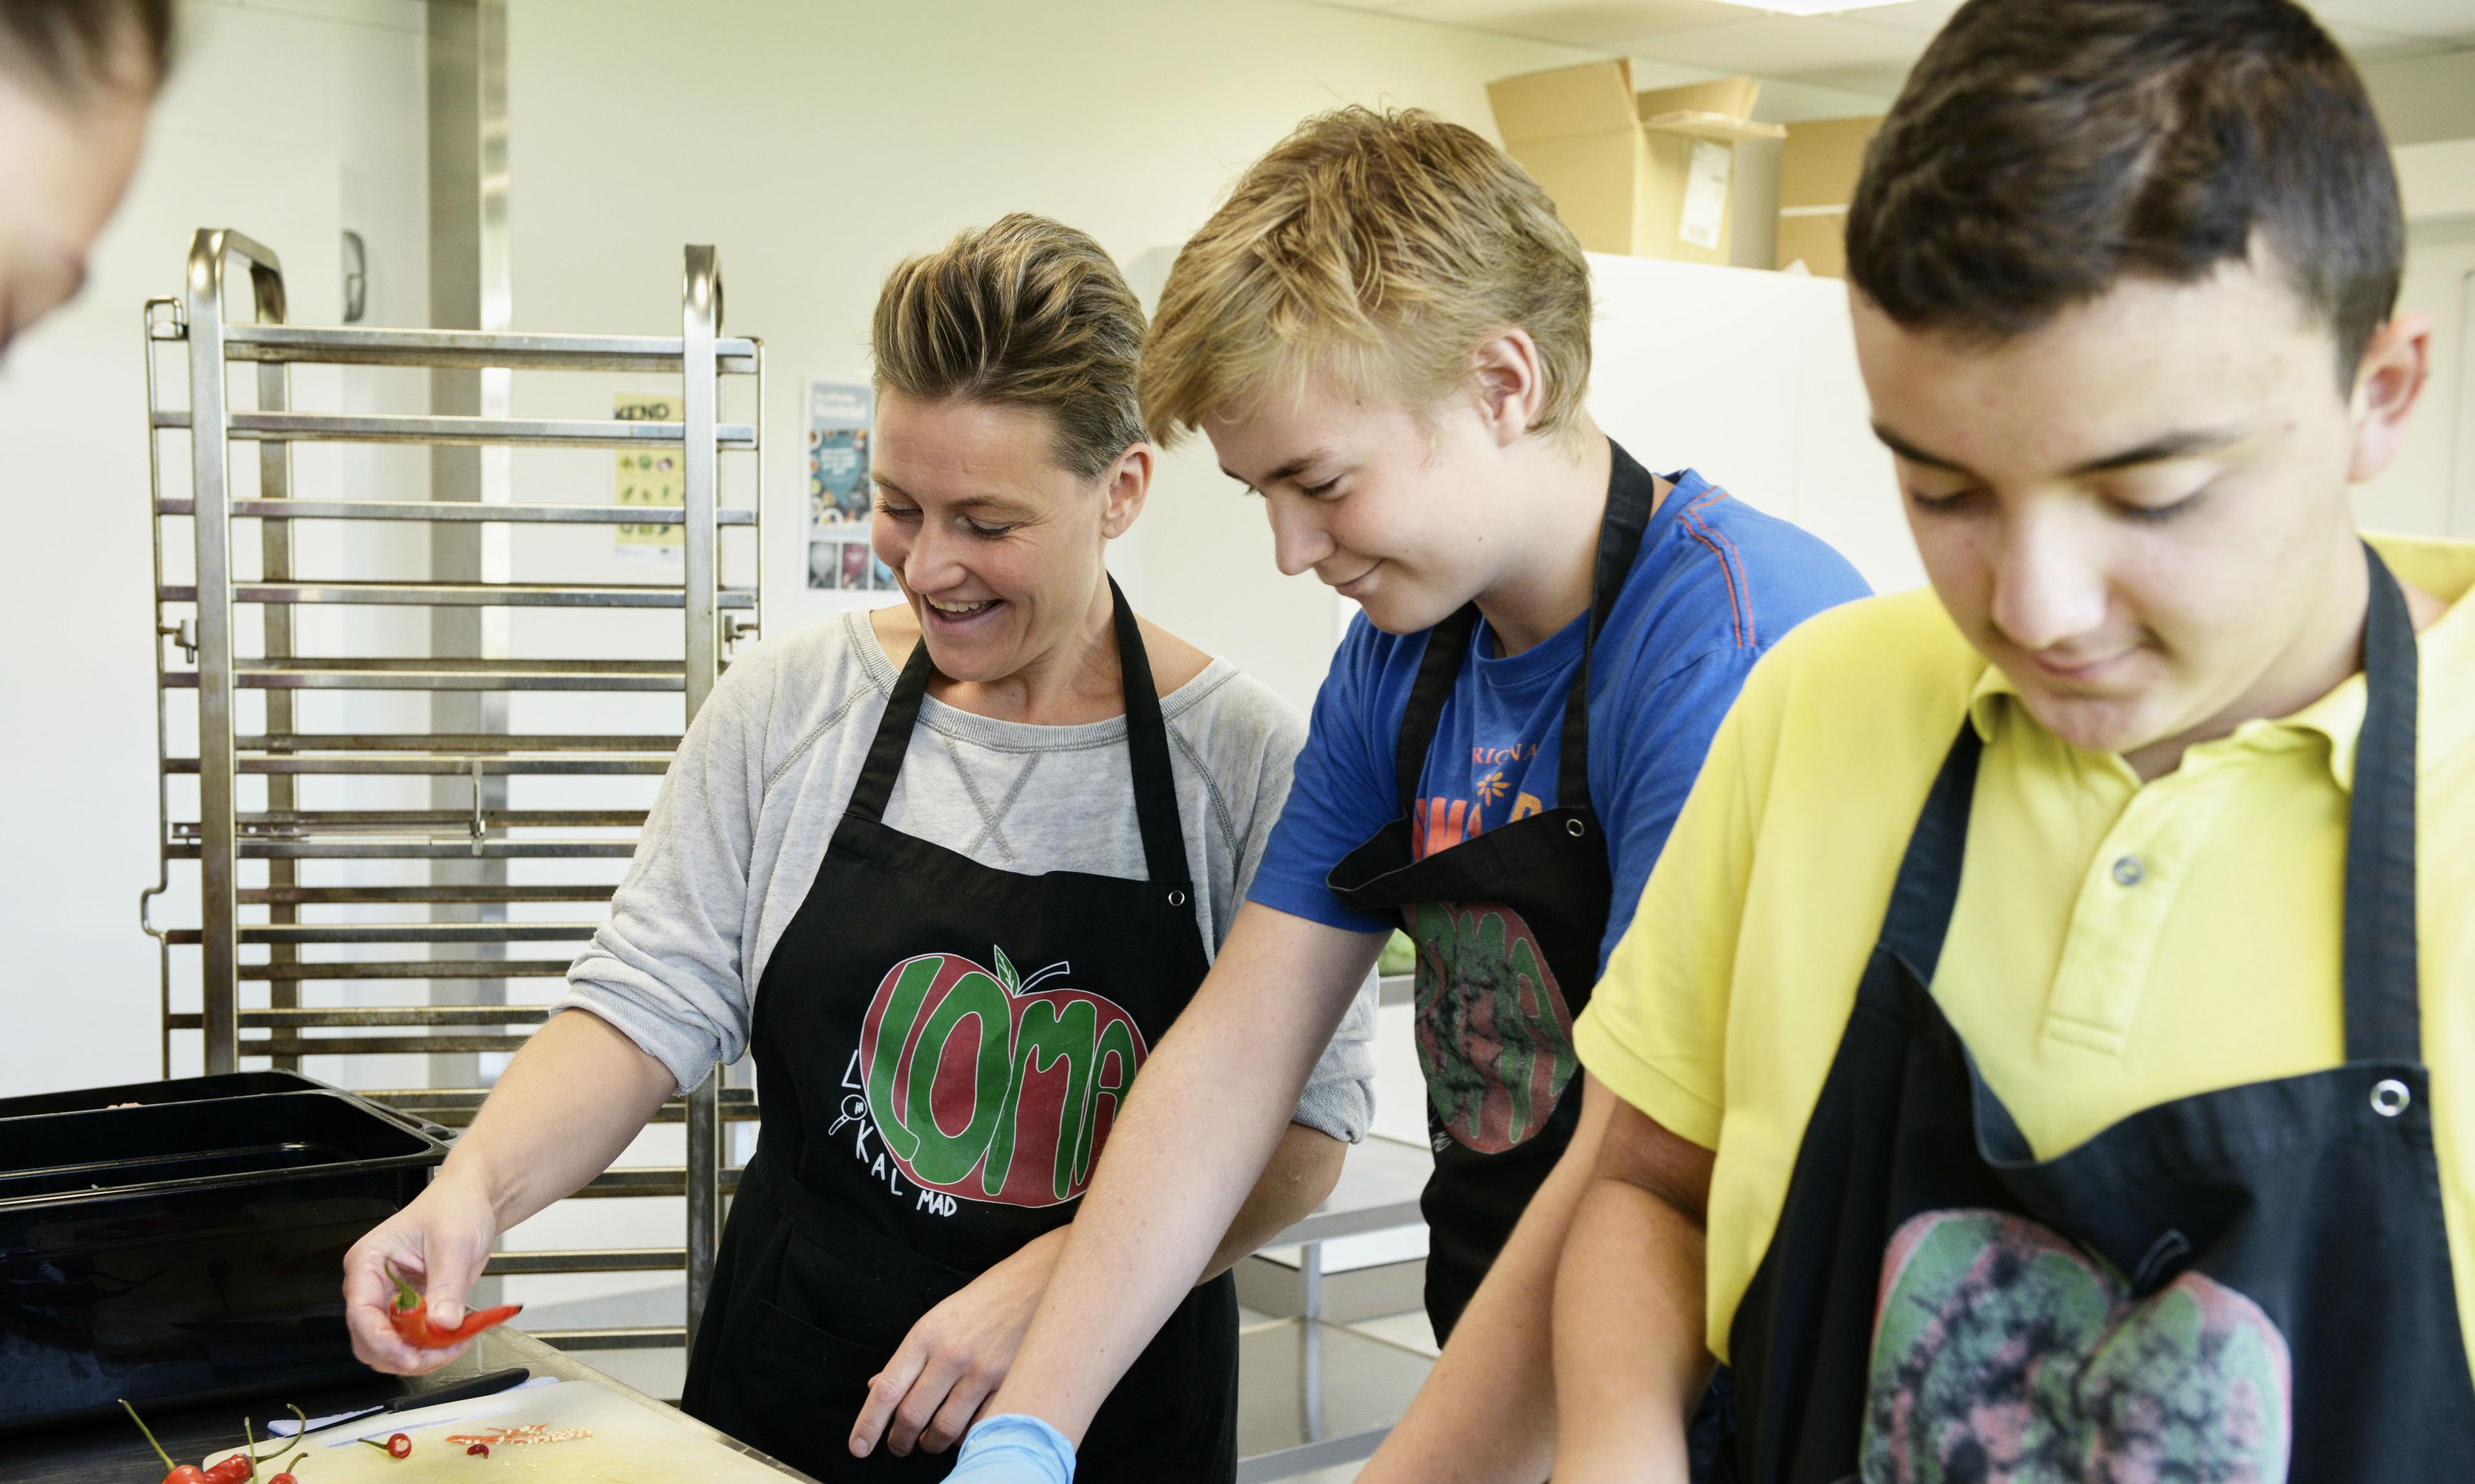 På Nymarkskolen går der kun elever fra 7. - 9. klasse. Deres undervisning indenfor LOMA-projektet er mere baseret på praktisk arbejde i køkkenet, hvor mindre elever lærer teoretisk.
